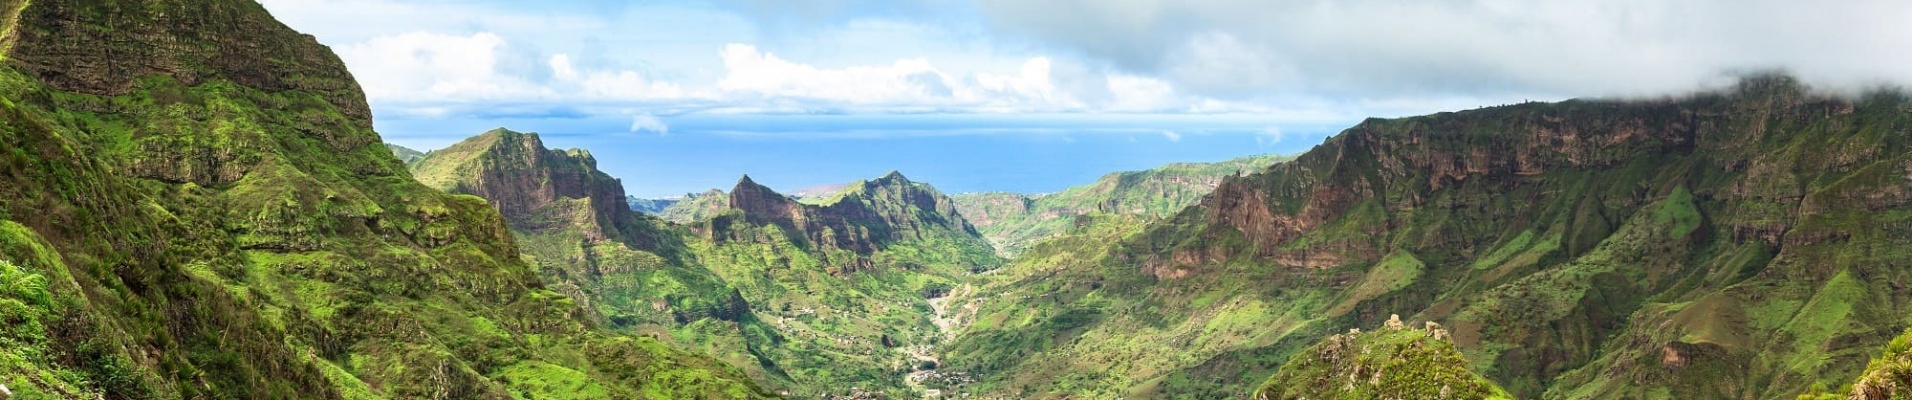 Vue panoramique de de la chaîne montagneuse de Serra Malagueta sur l'île de Santiago, Cap Vert